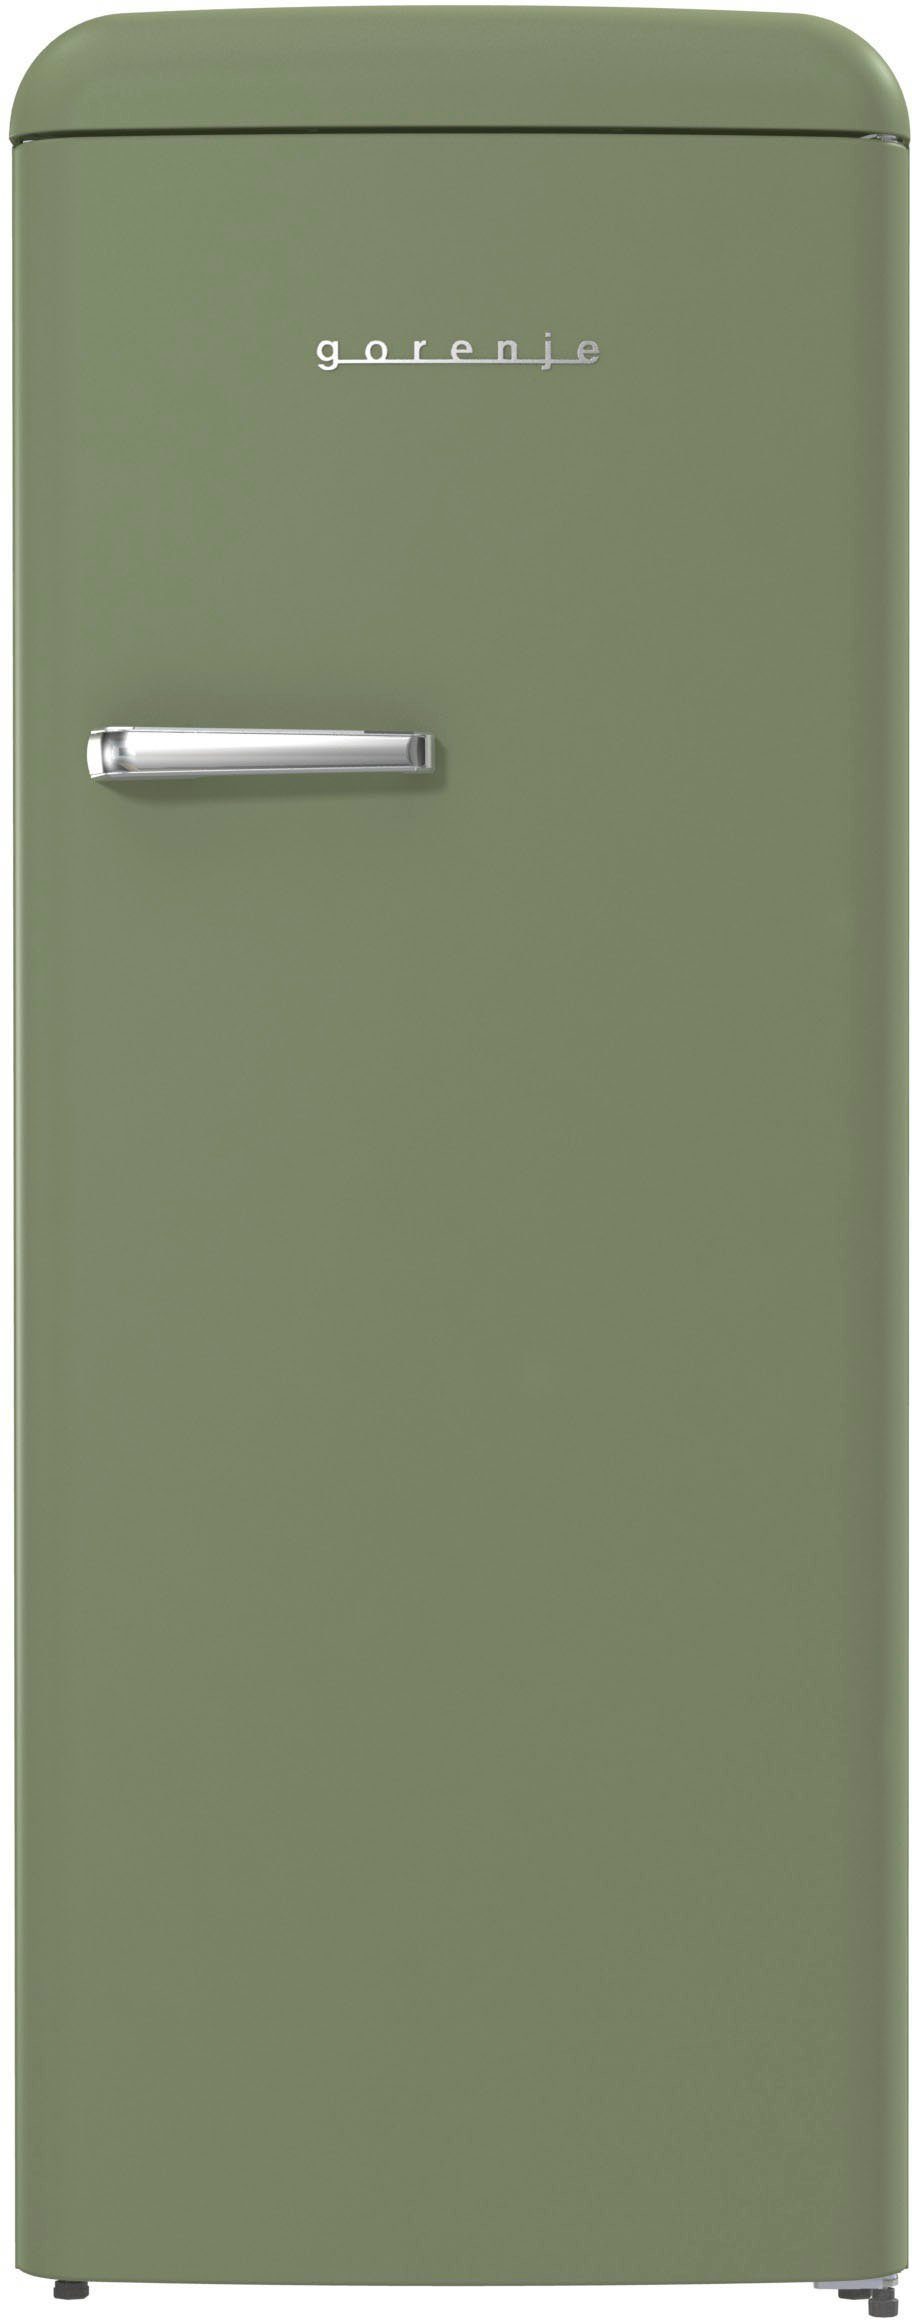 GORENJE Kühlschrank ORB615DOL, 152,5 cm hoch, 59,5 cm breit